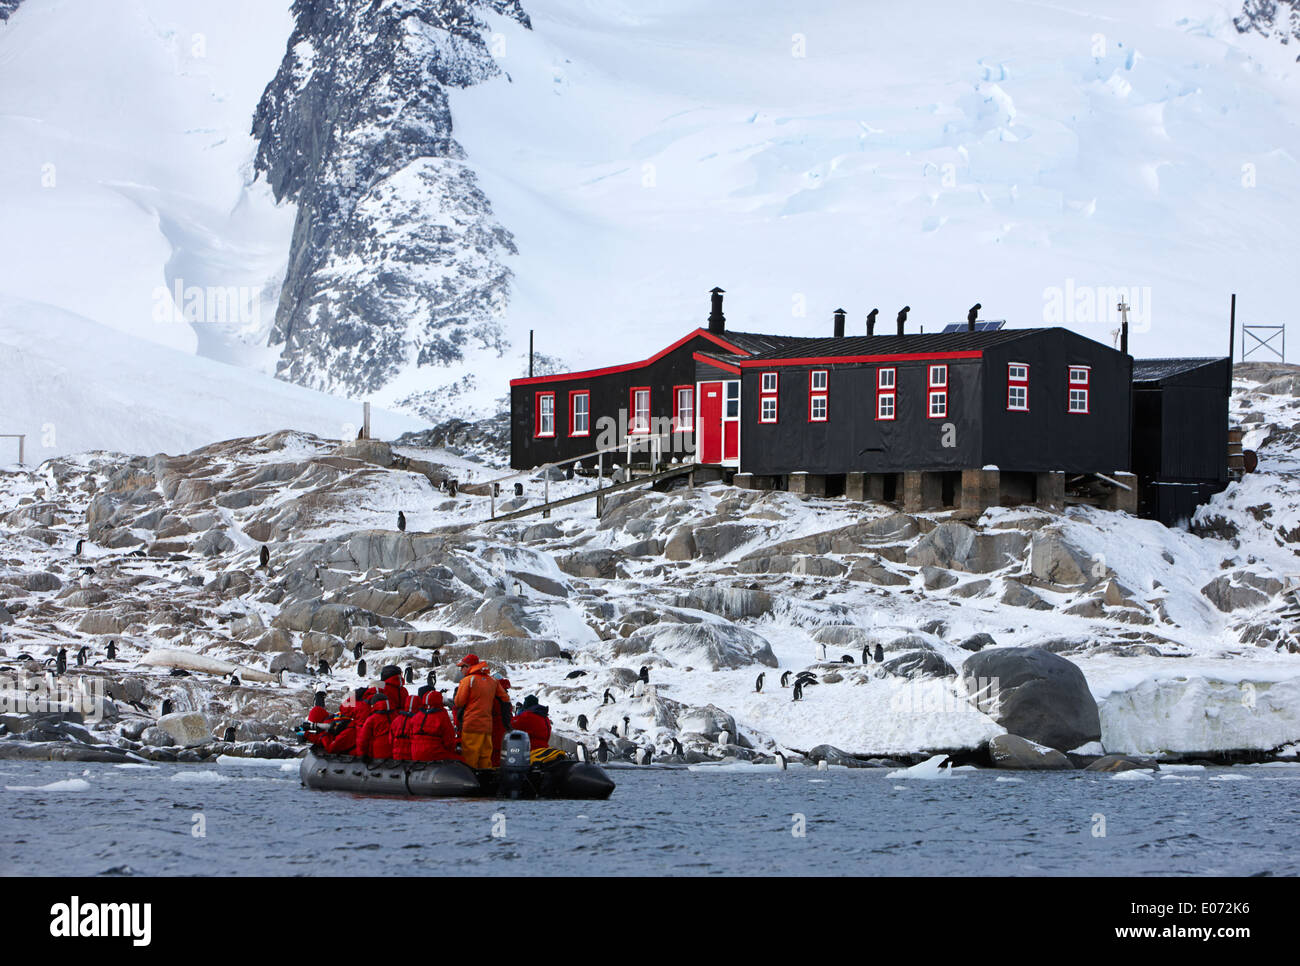 Approches zodiac touristiques maison bransfield port lockroy British Antarctic Heritage Trust sur la station antarctique île goudier Banque D'Images